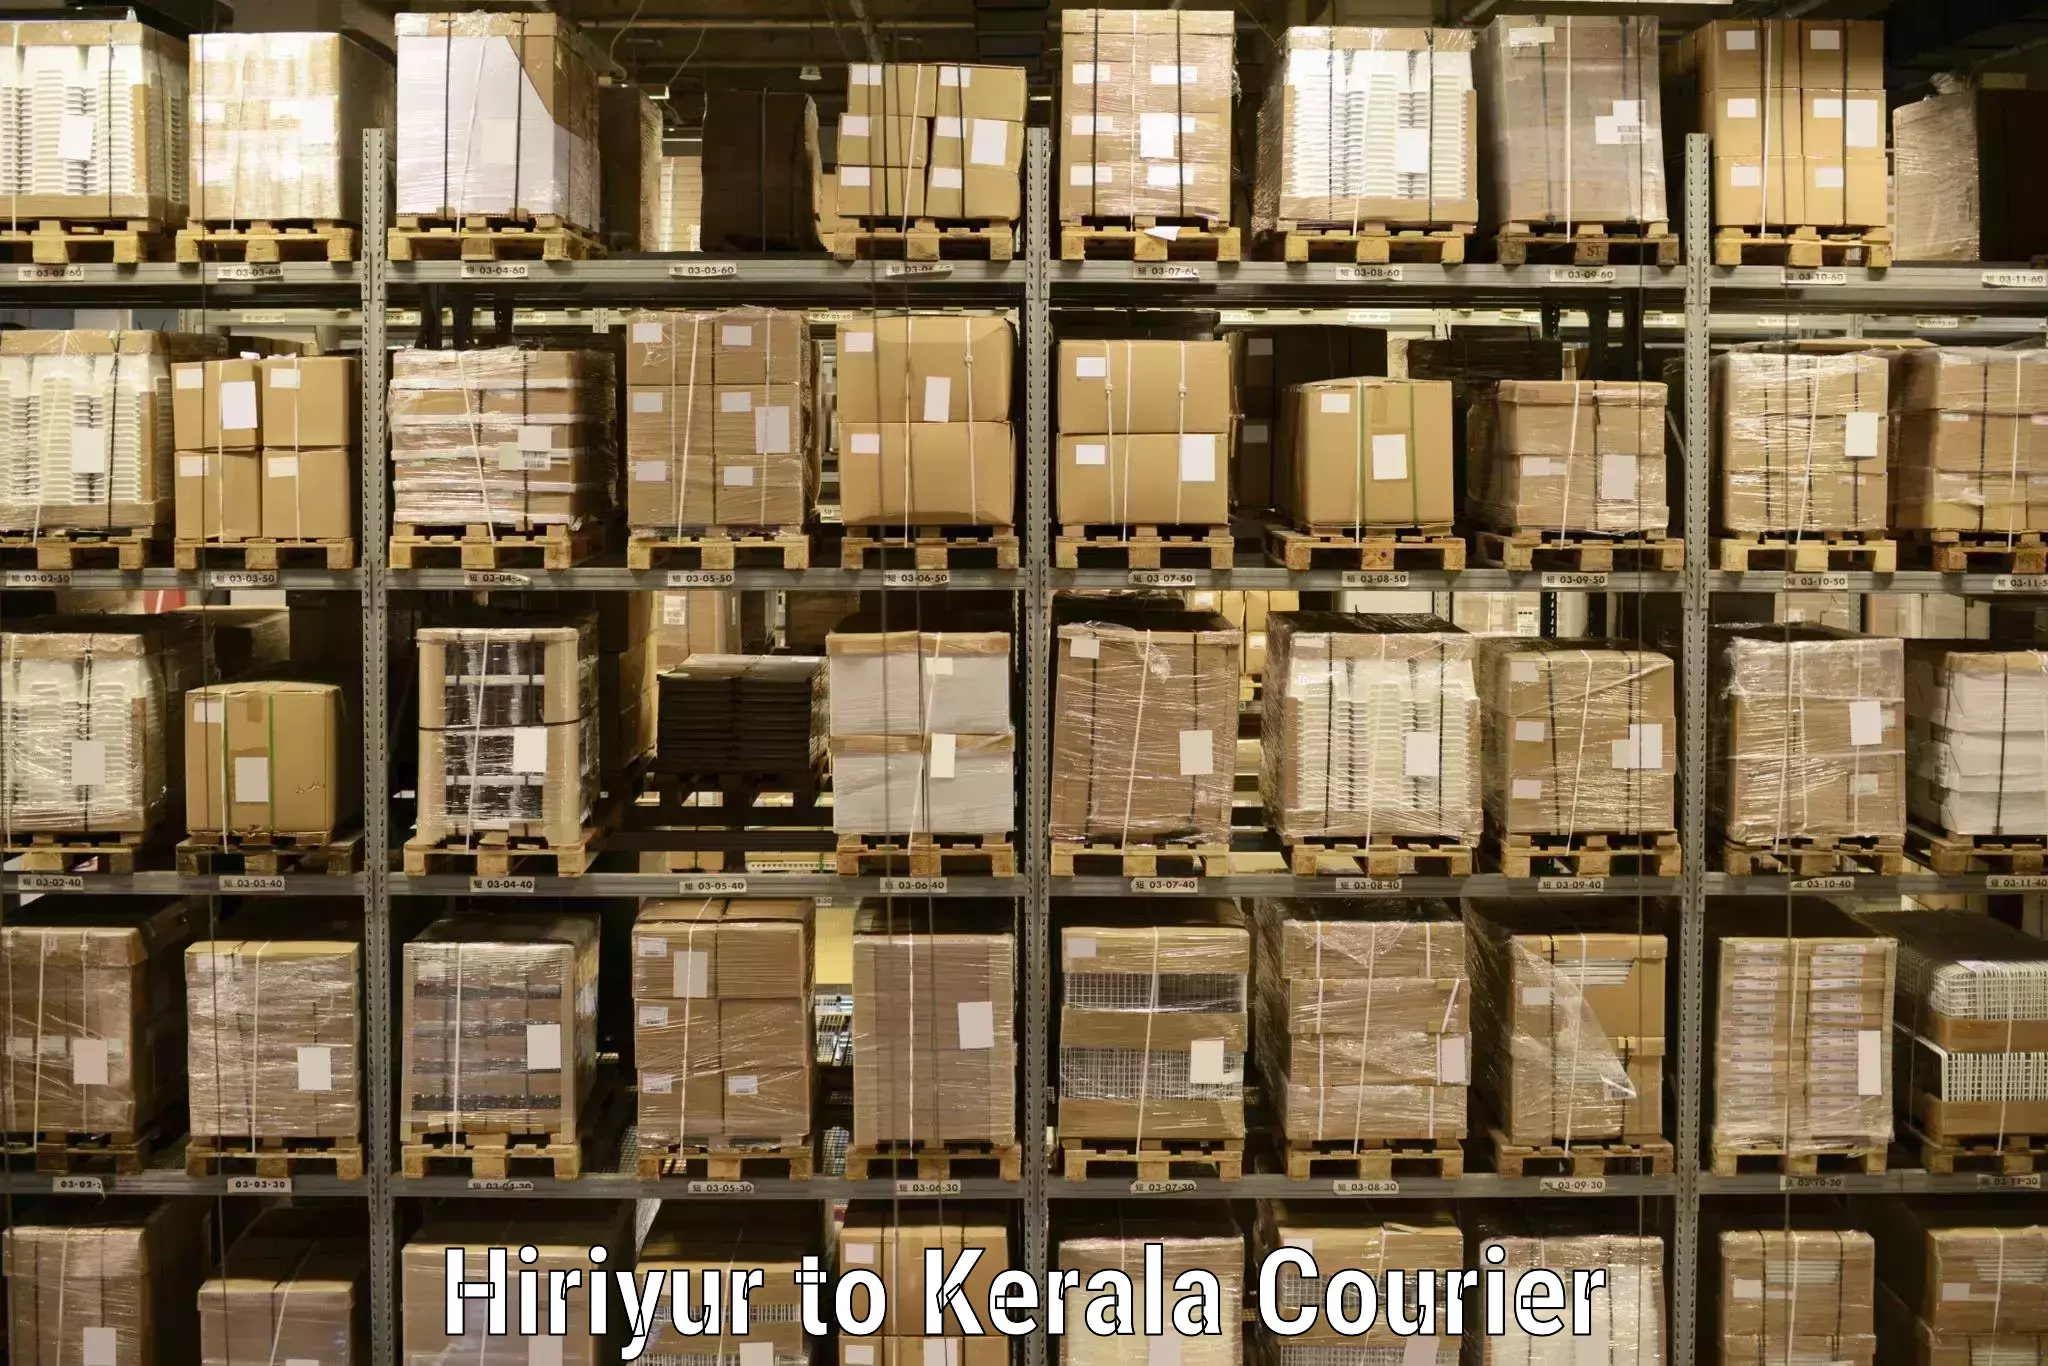 User-friendly courier app Hiriyur to Akaloor